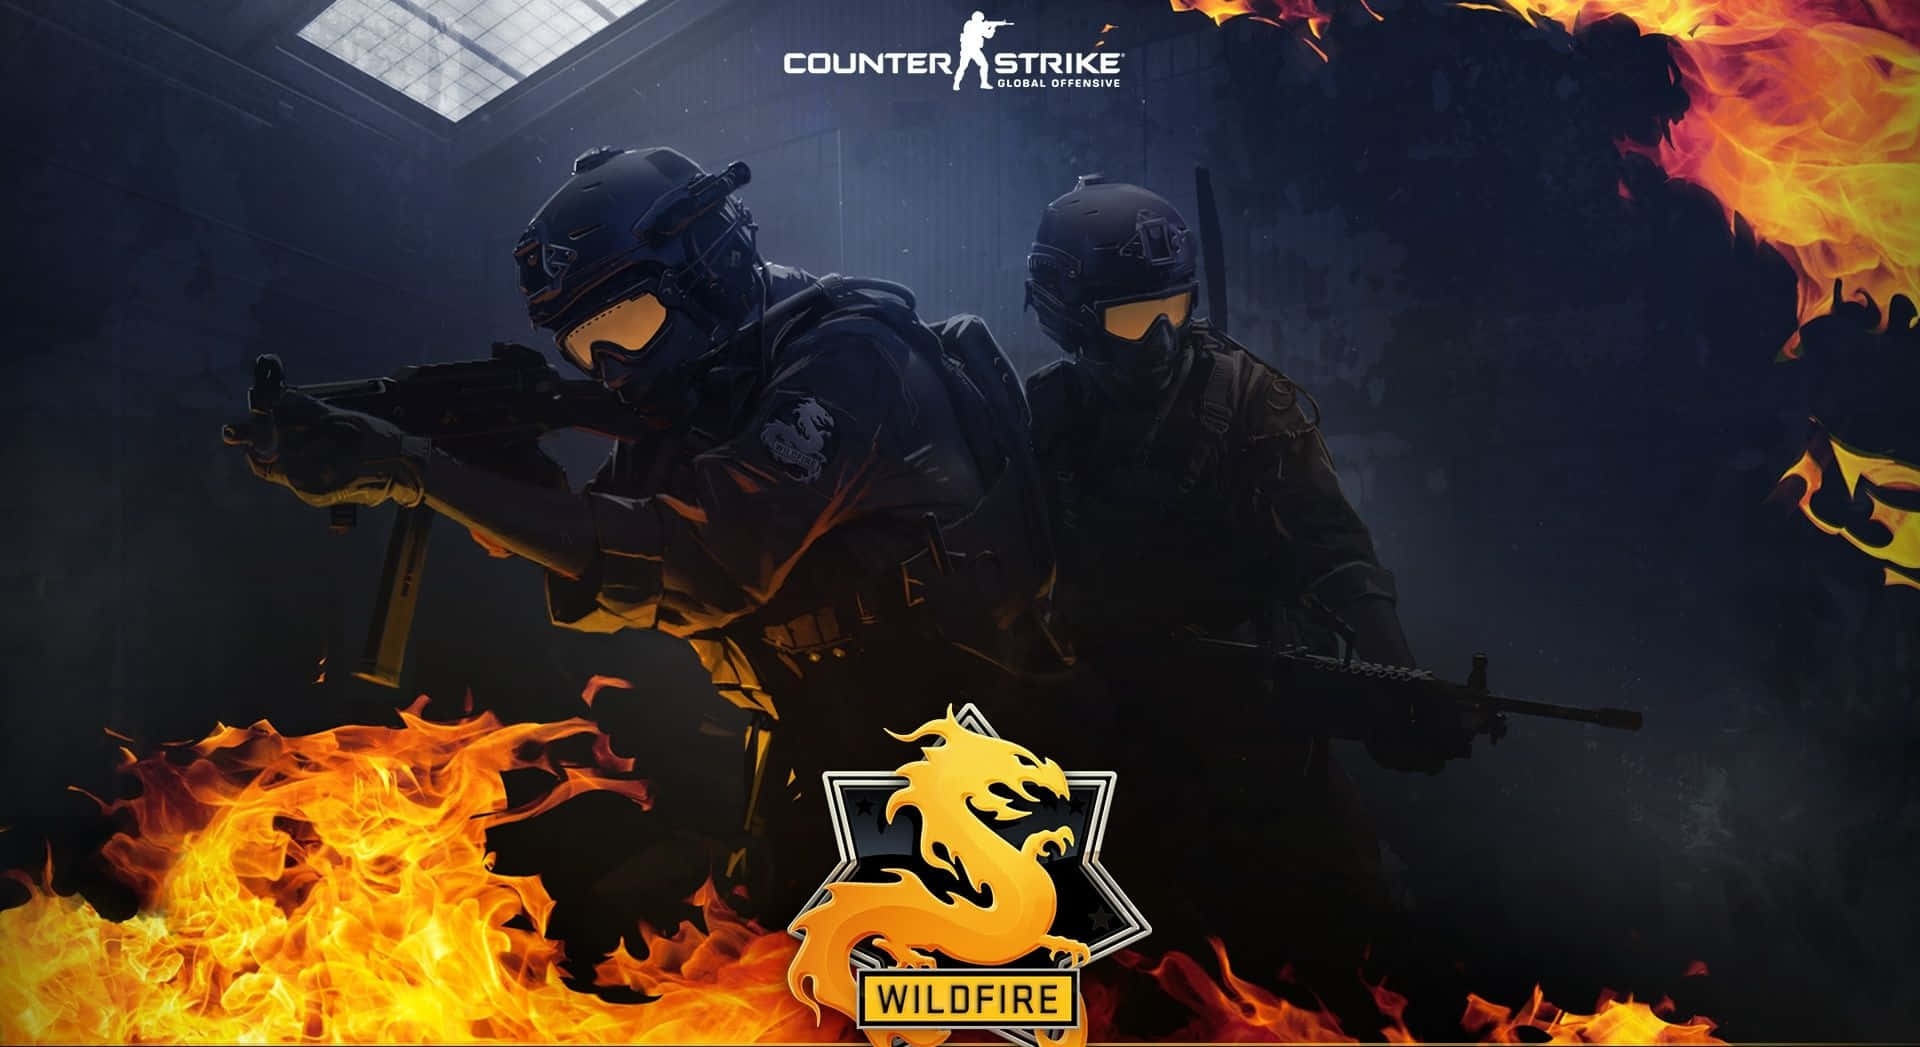 Dygtige spillere i et barsk kamp af Counter Strike Global Offensive smykker væggene. Wallpaper